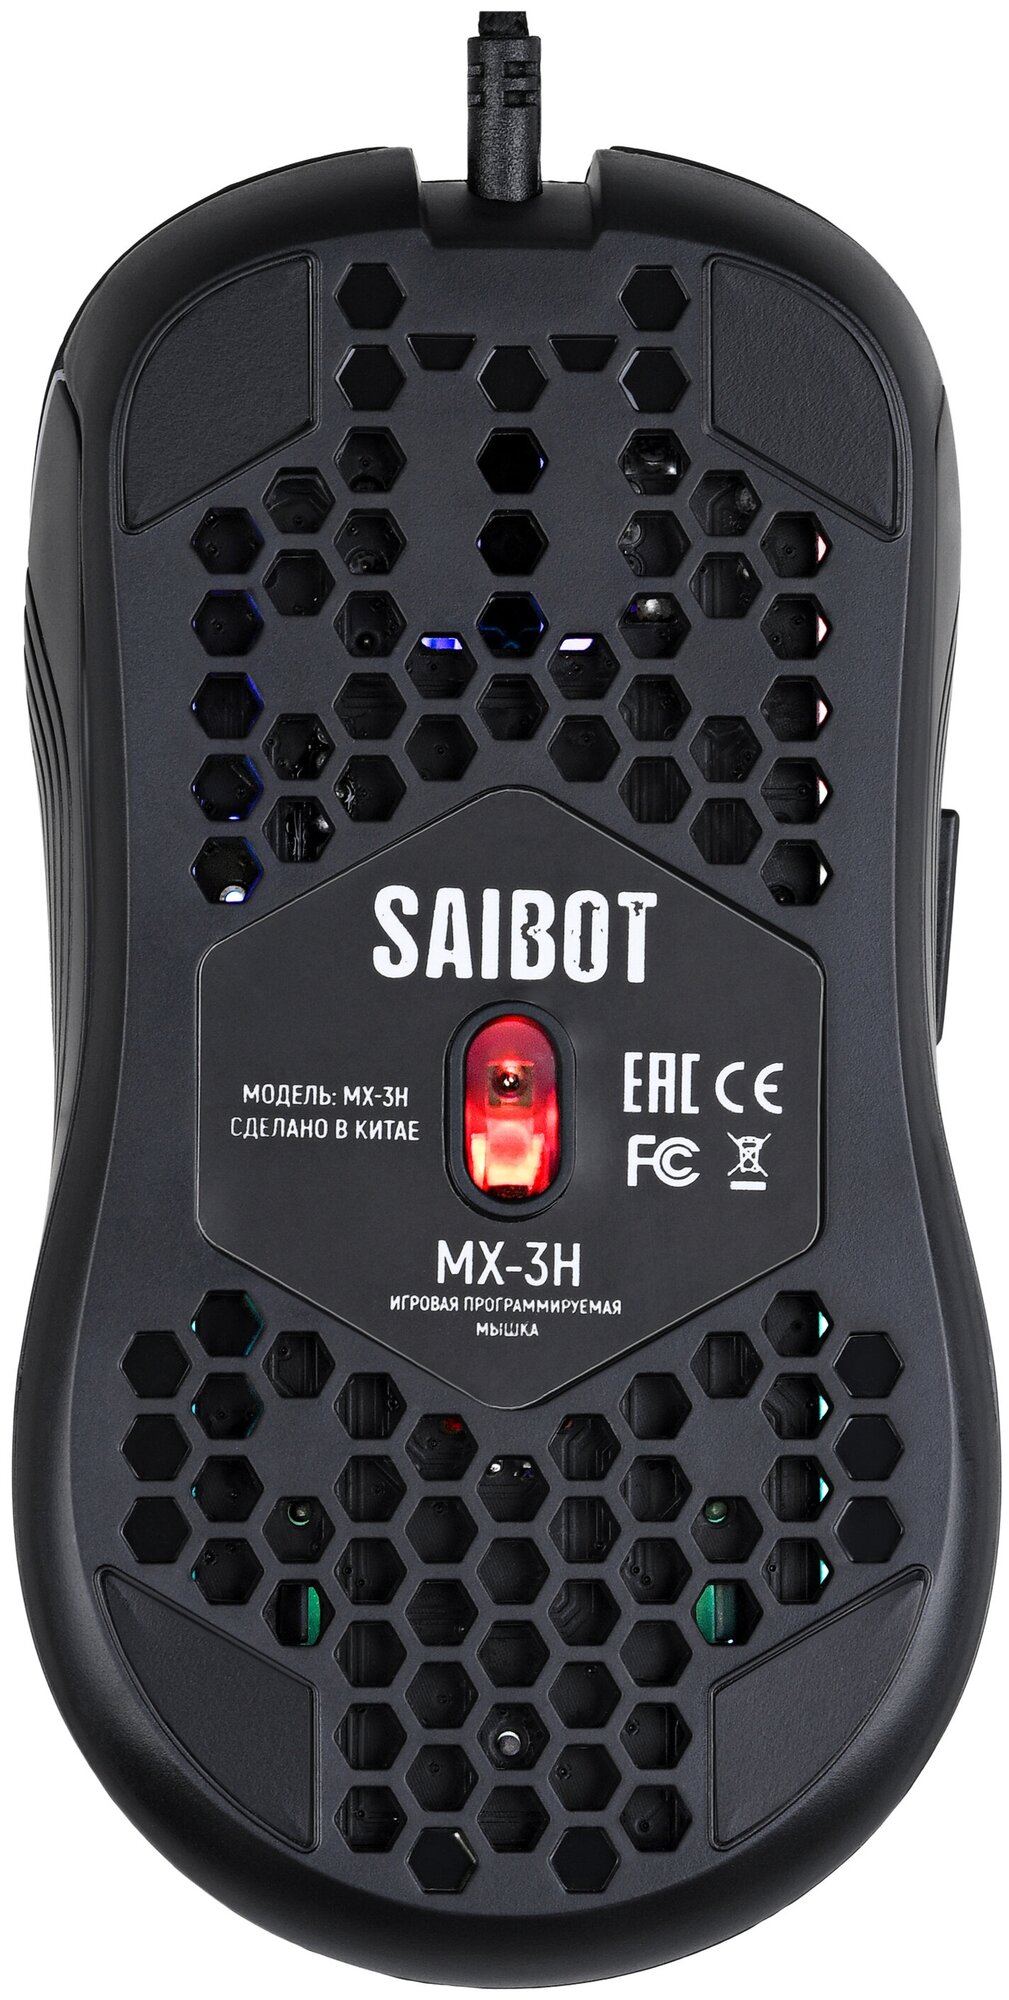 Игровая проводная мышь компьютерная TFN Saibot MX-3H black, проводная мышка